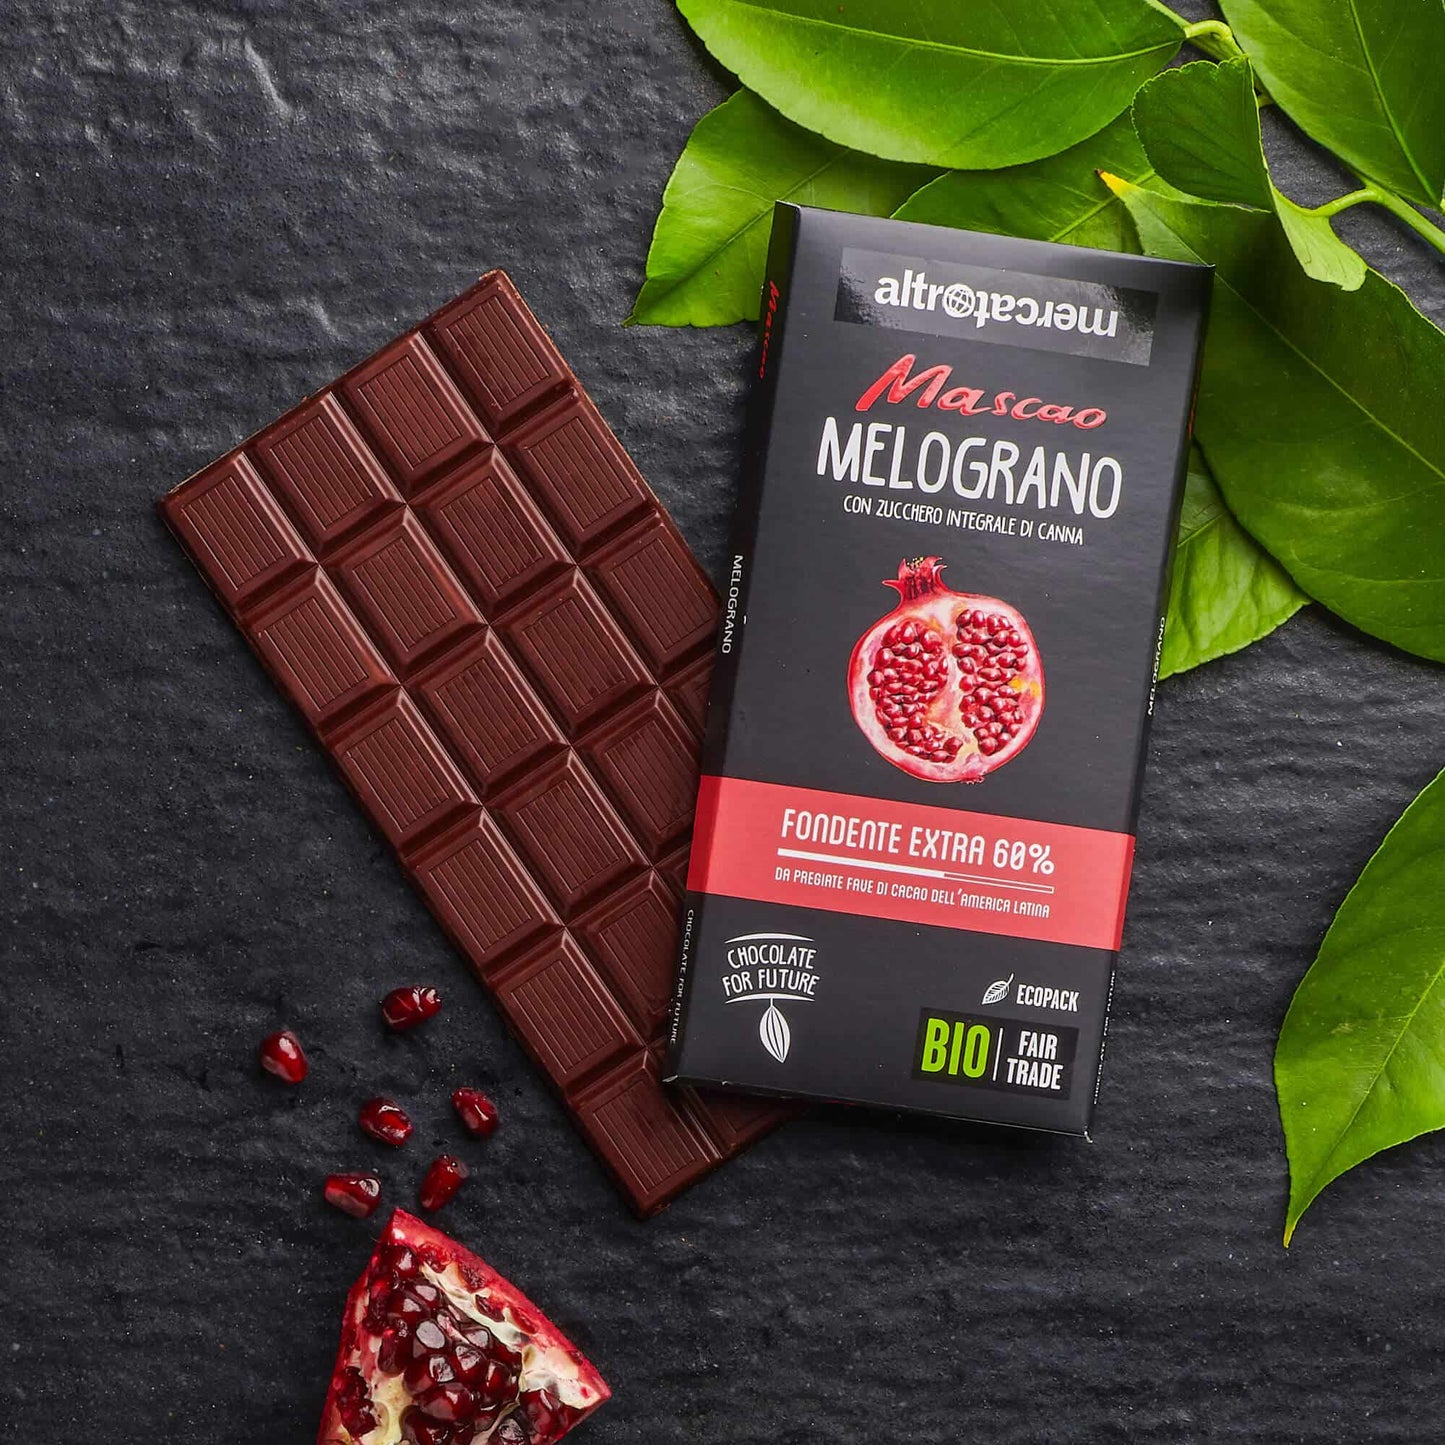 Cioccolato Mascao fondente extra al melograno - bio | 80 g